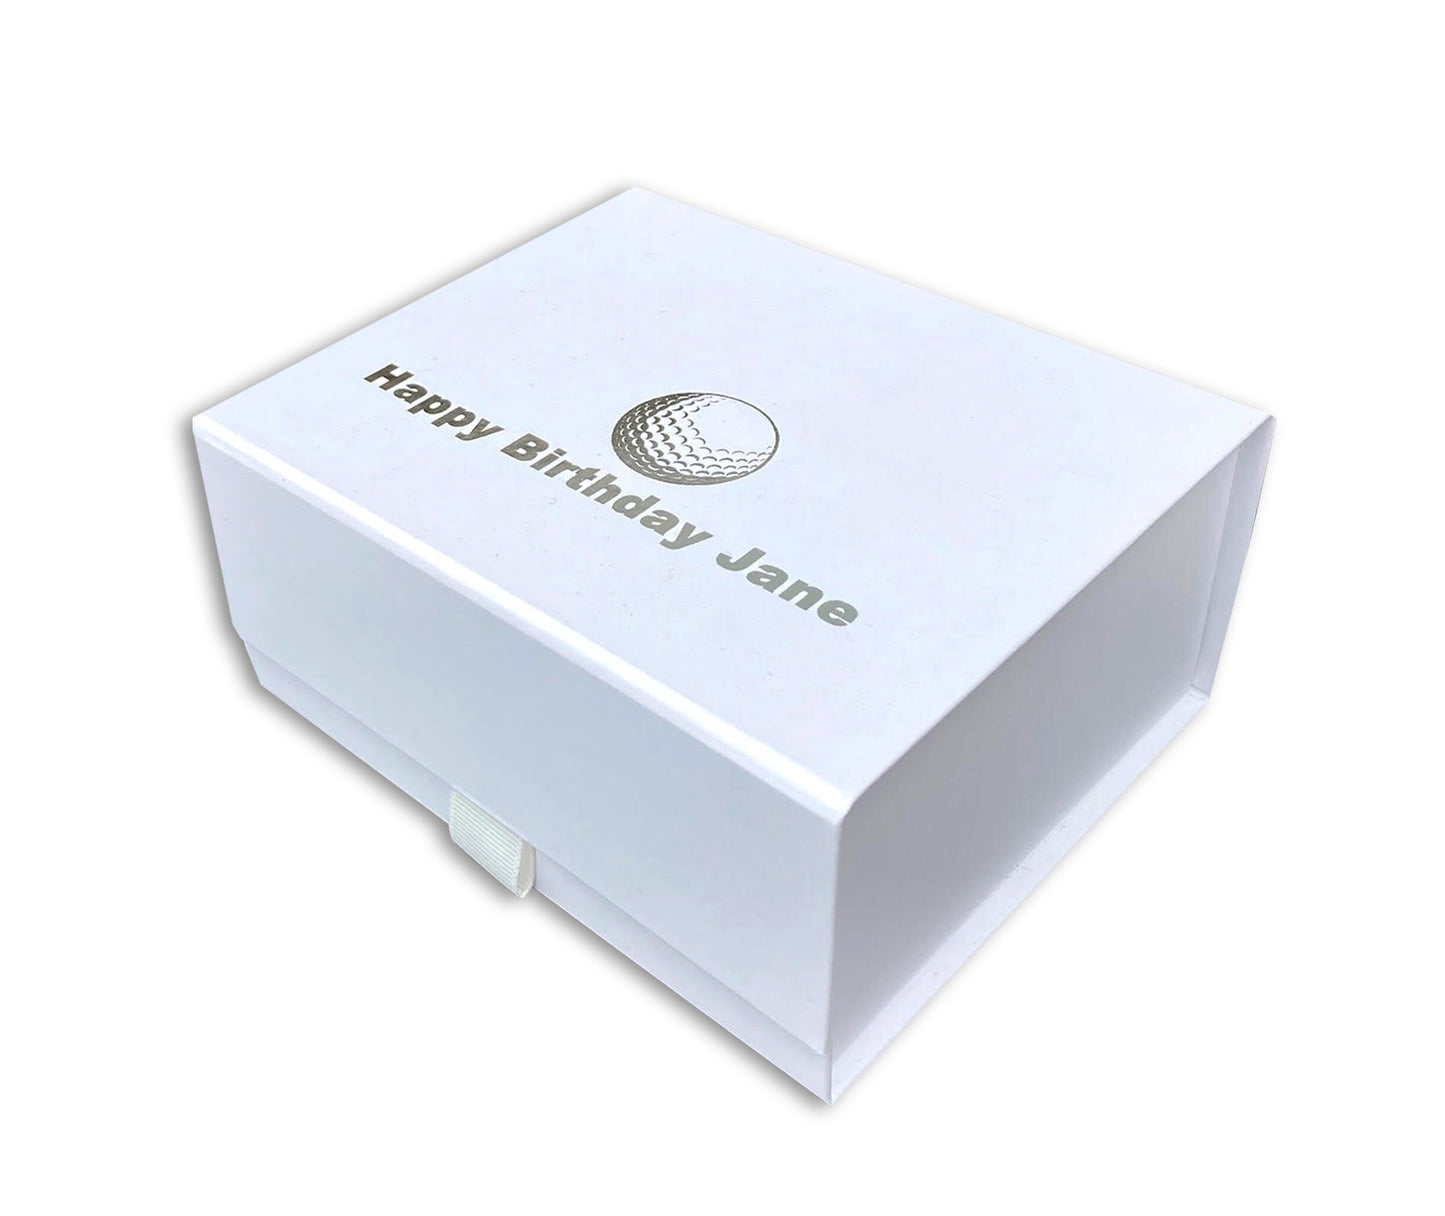 Personalised ladies golf gift box socks, balls womens custom print Christmas set